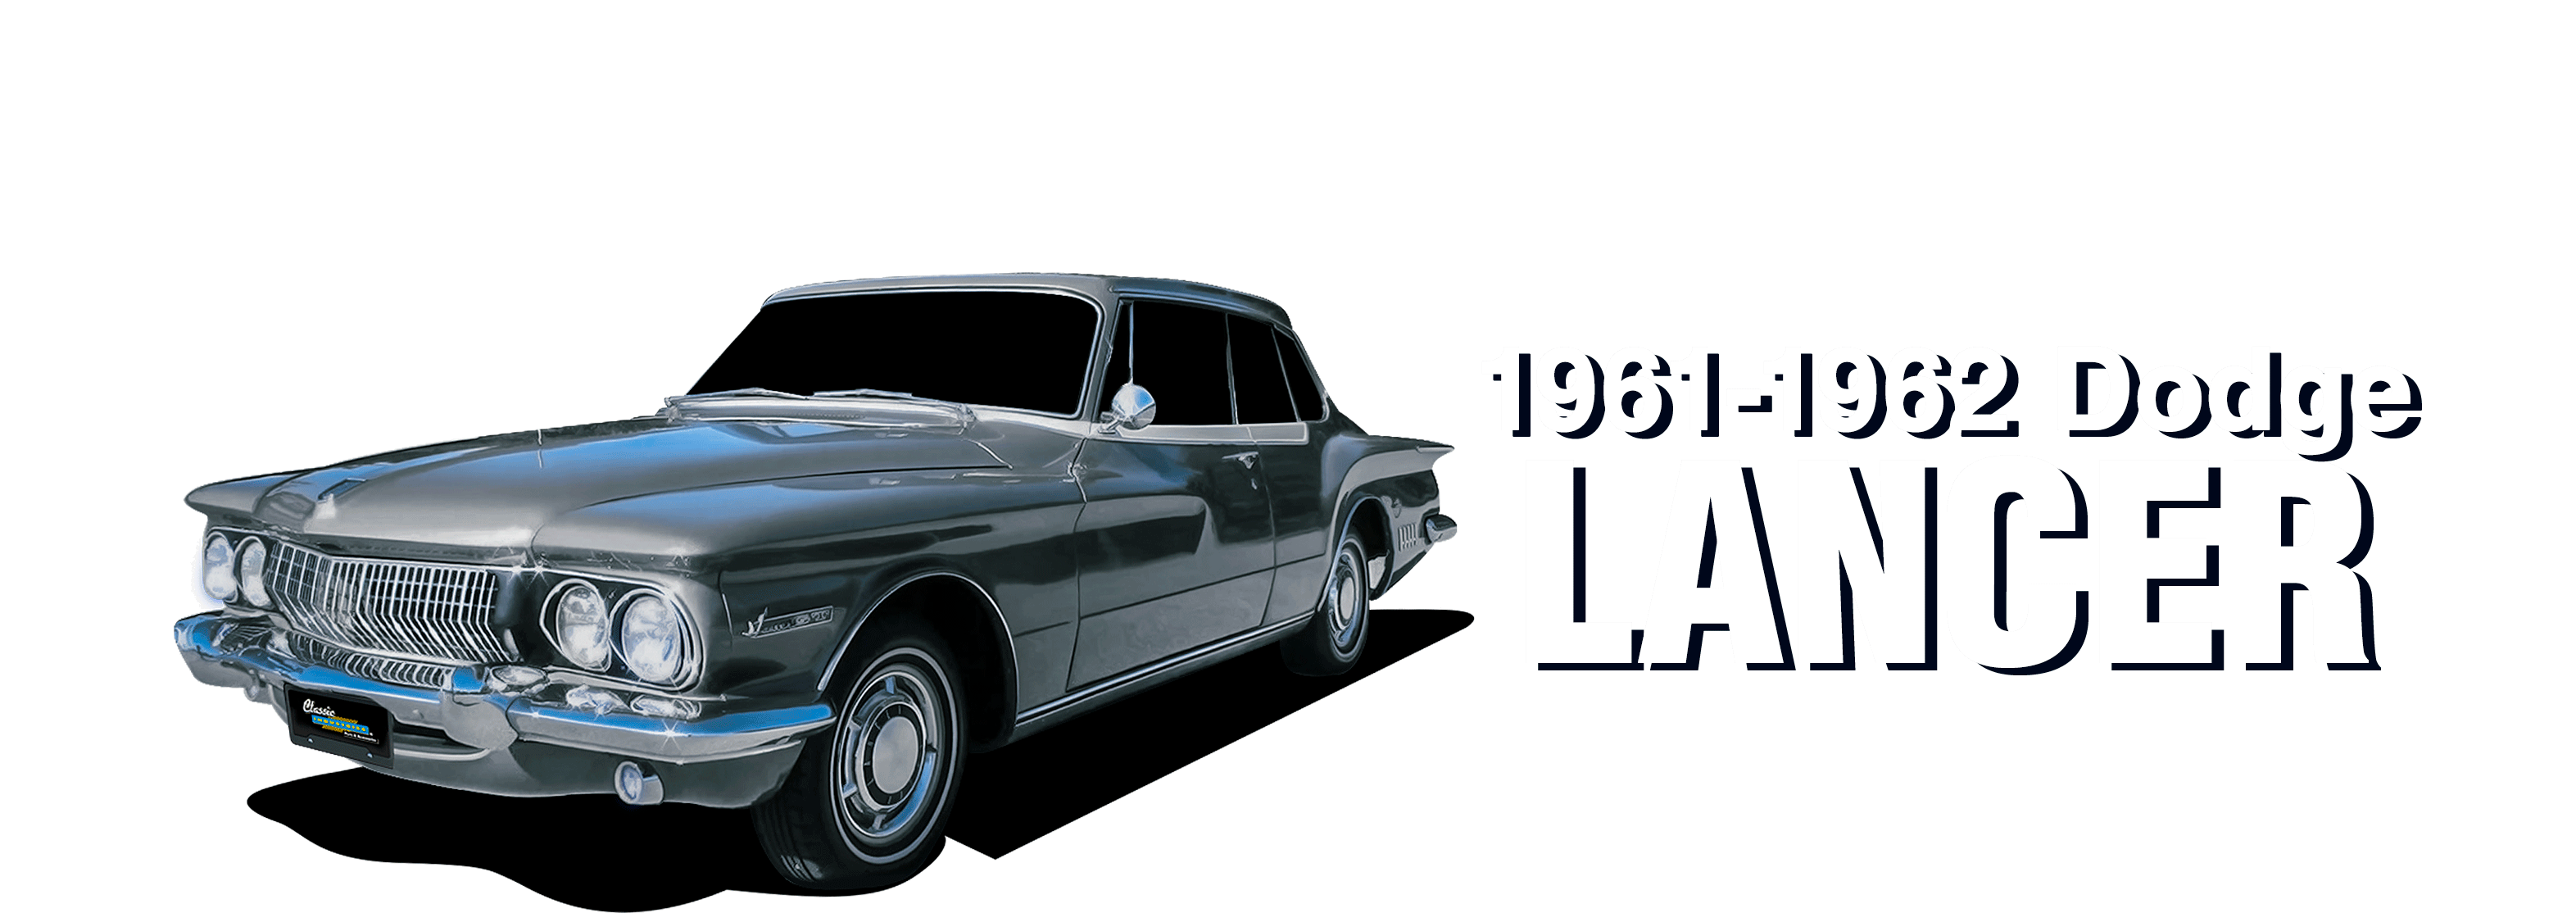 Dodge-Lancer-vehicle-desktop